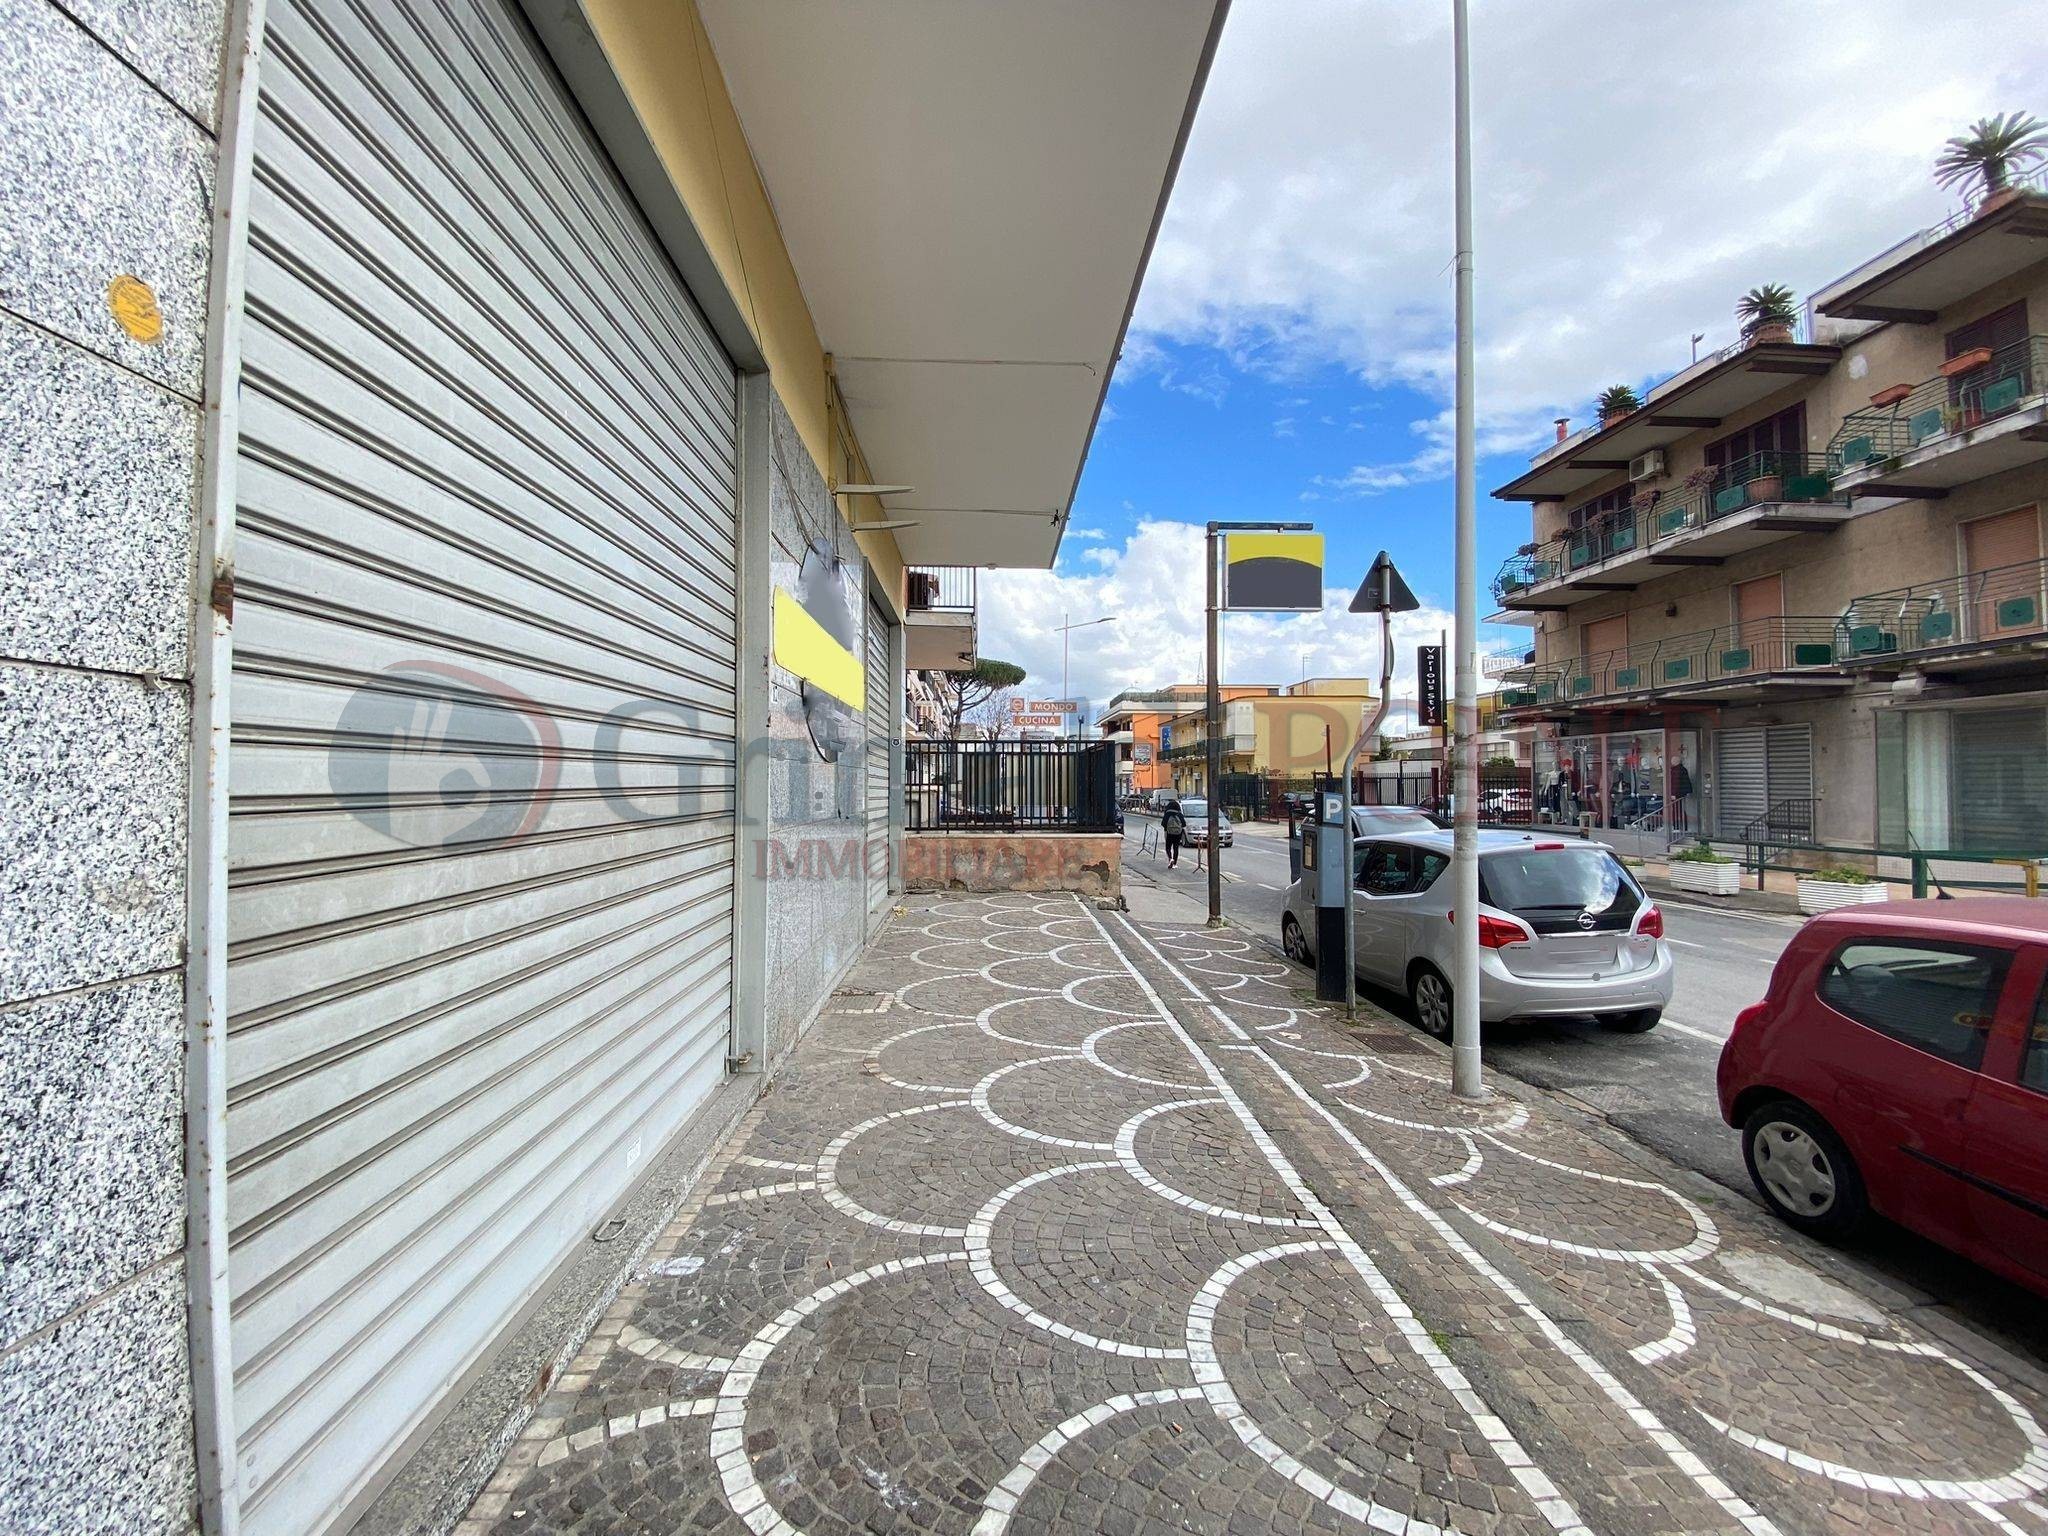 Locale commerciale ristrutturata a Giugliano in Campania